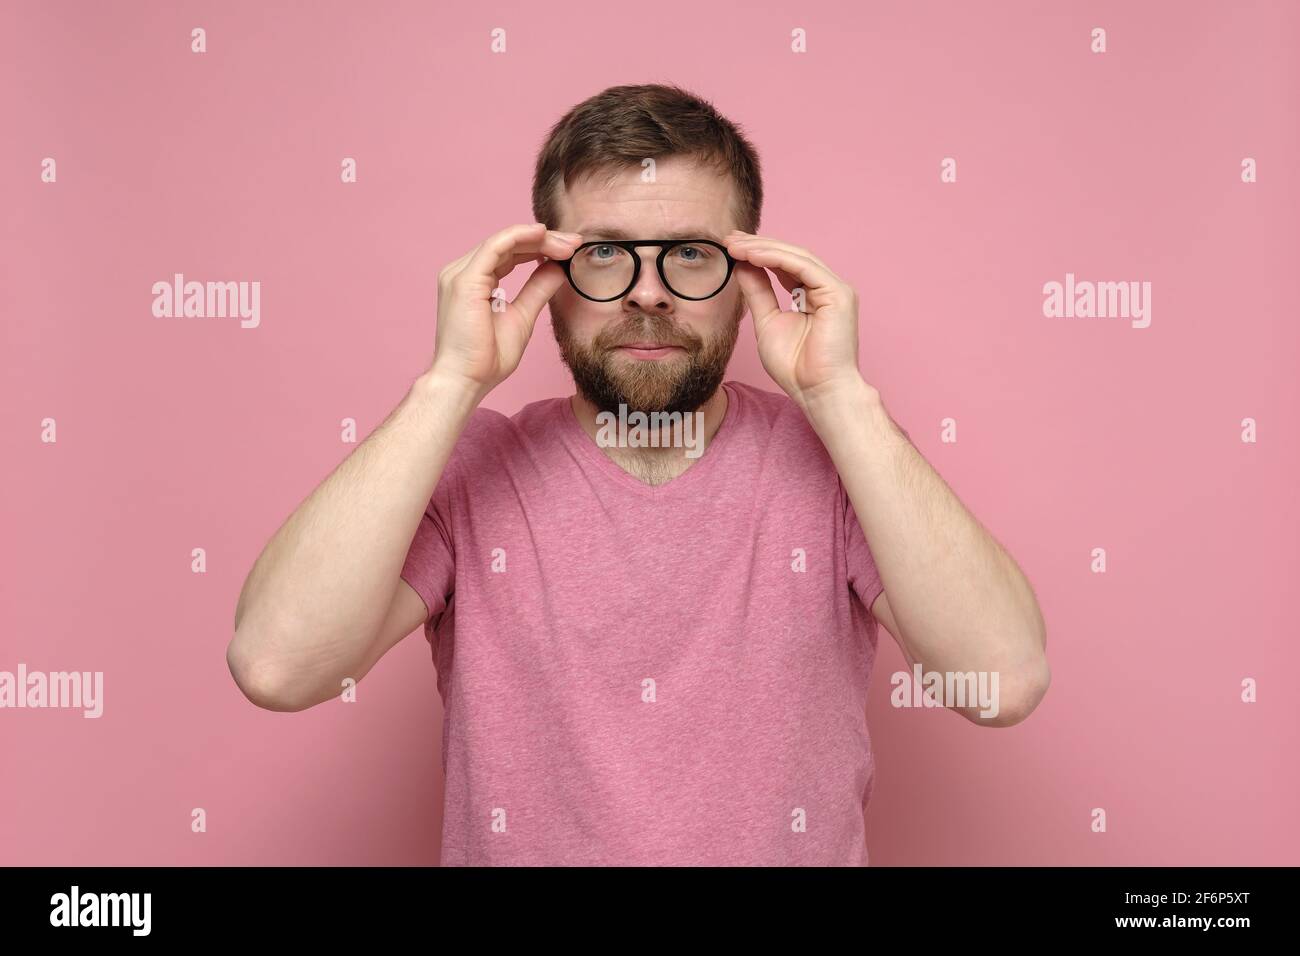 Homme caucasien avec une mauvaise vue essayant des lunettes, il choisit soigneusement les accessoires et les lentilles appropriés. Fond rose. Banque D'Images